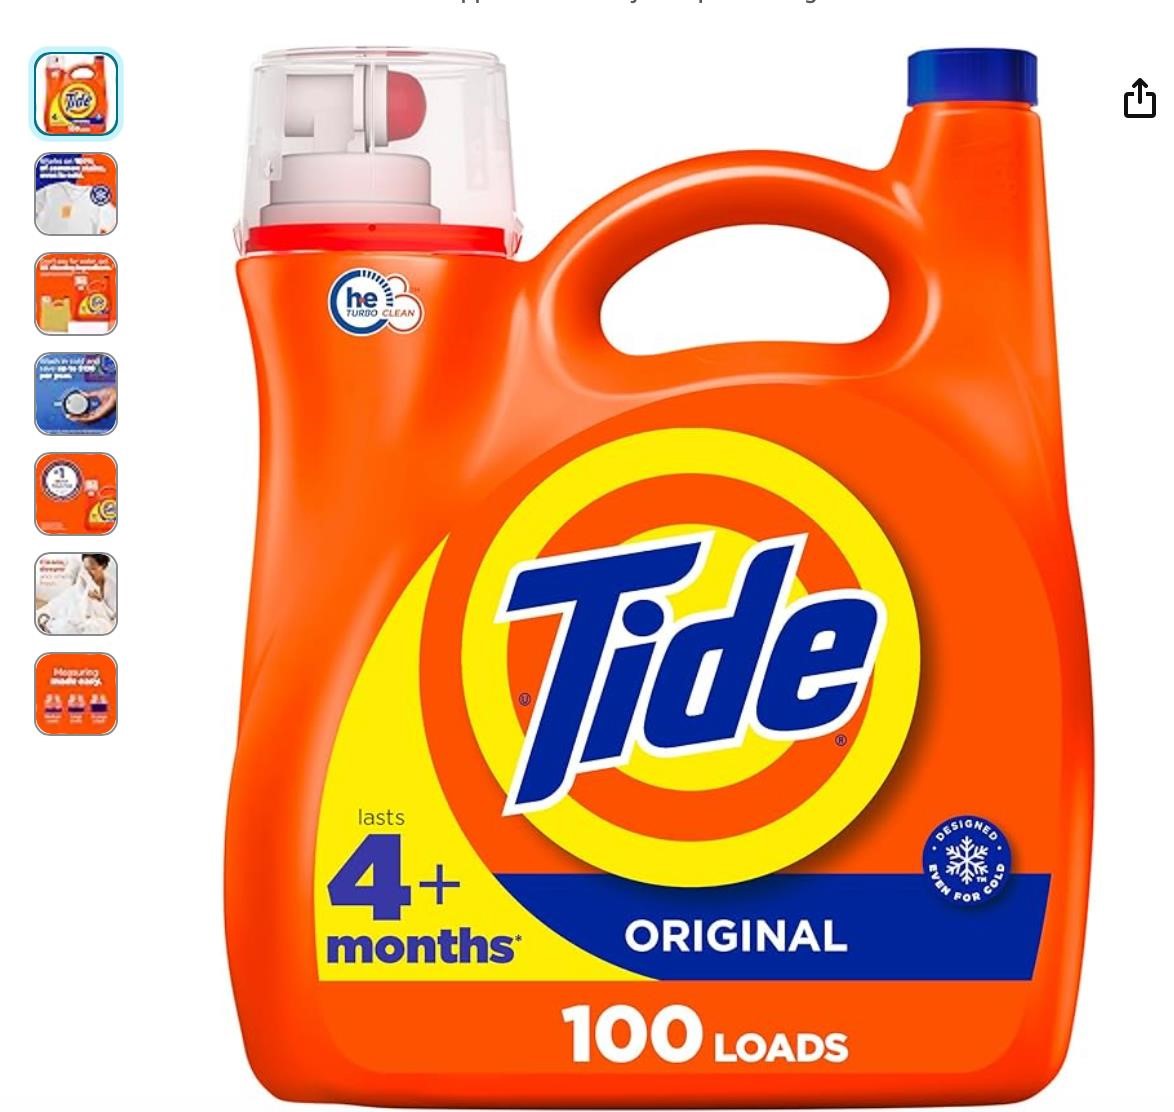 Liquid Laundry Detergent, Original, 100 loads,